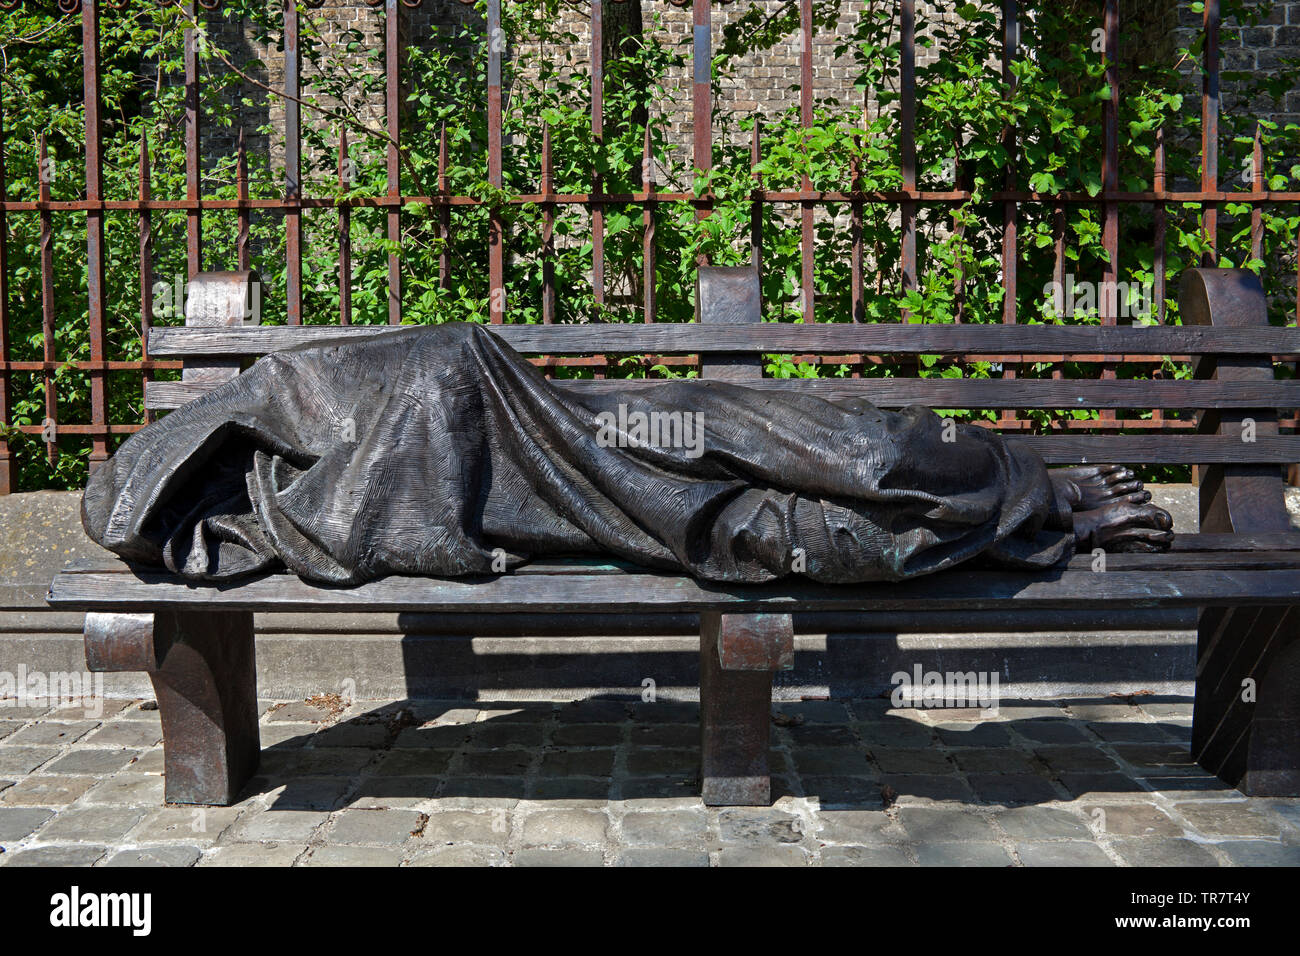 Brujas, Homeless Jesús, estatua de bronce, Stalijzerstraat, Bélgica, Europa Foto de stock